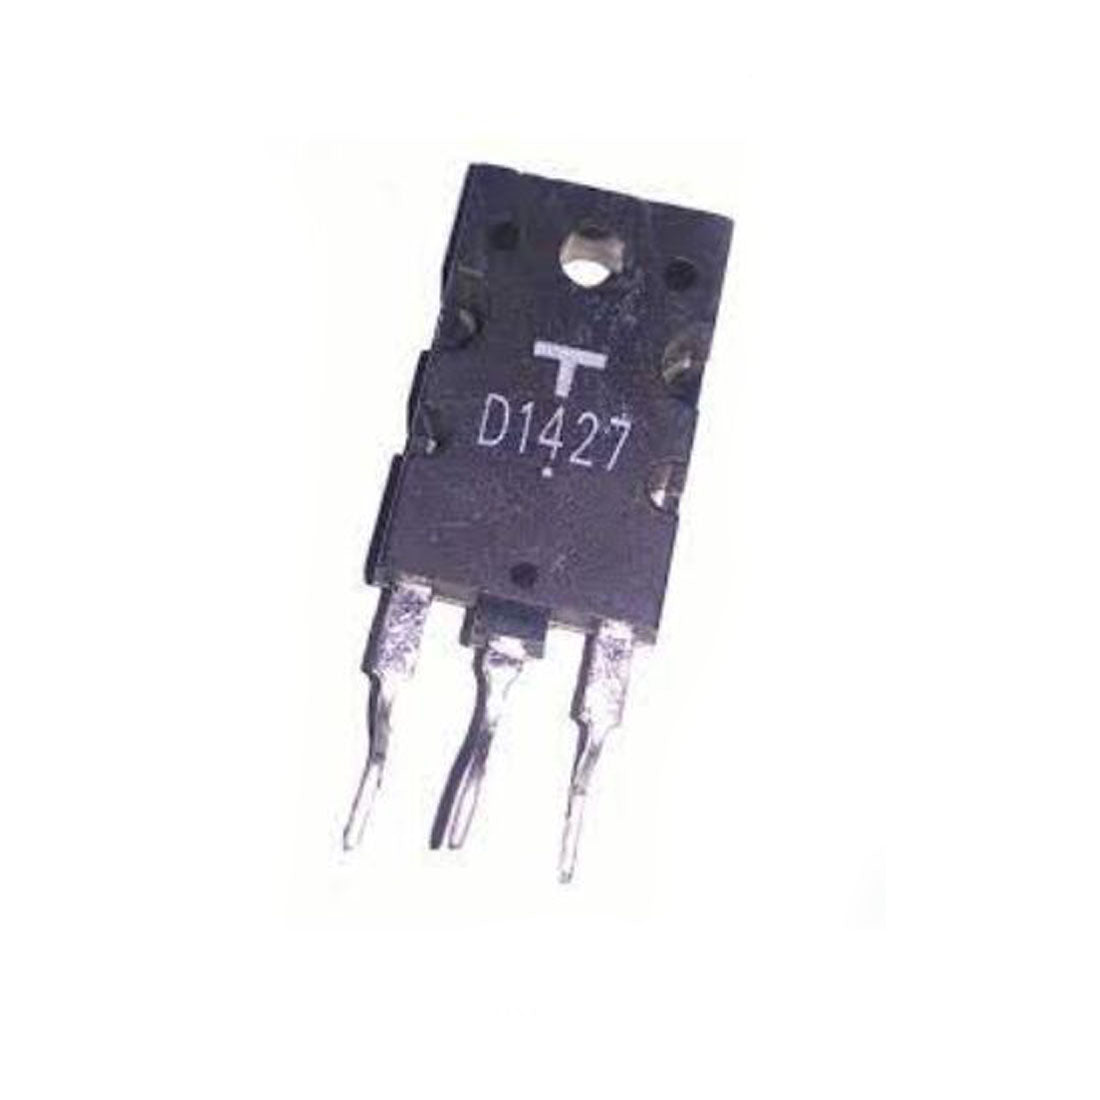 TOSHIBA D1427 componente elettronico, circuito integrato, 3 contatti